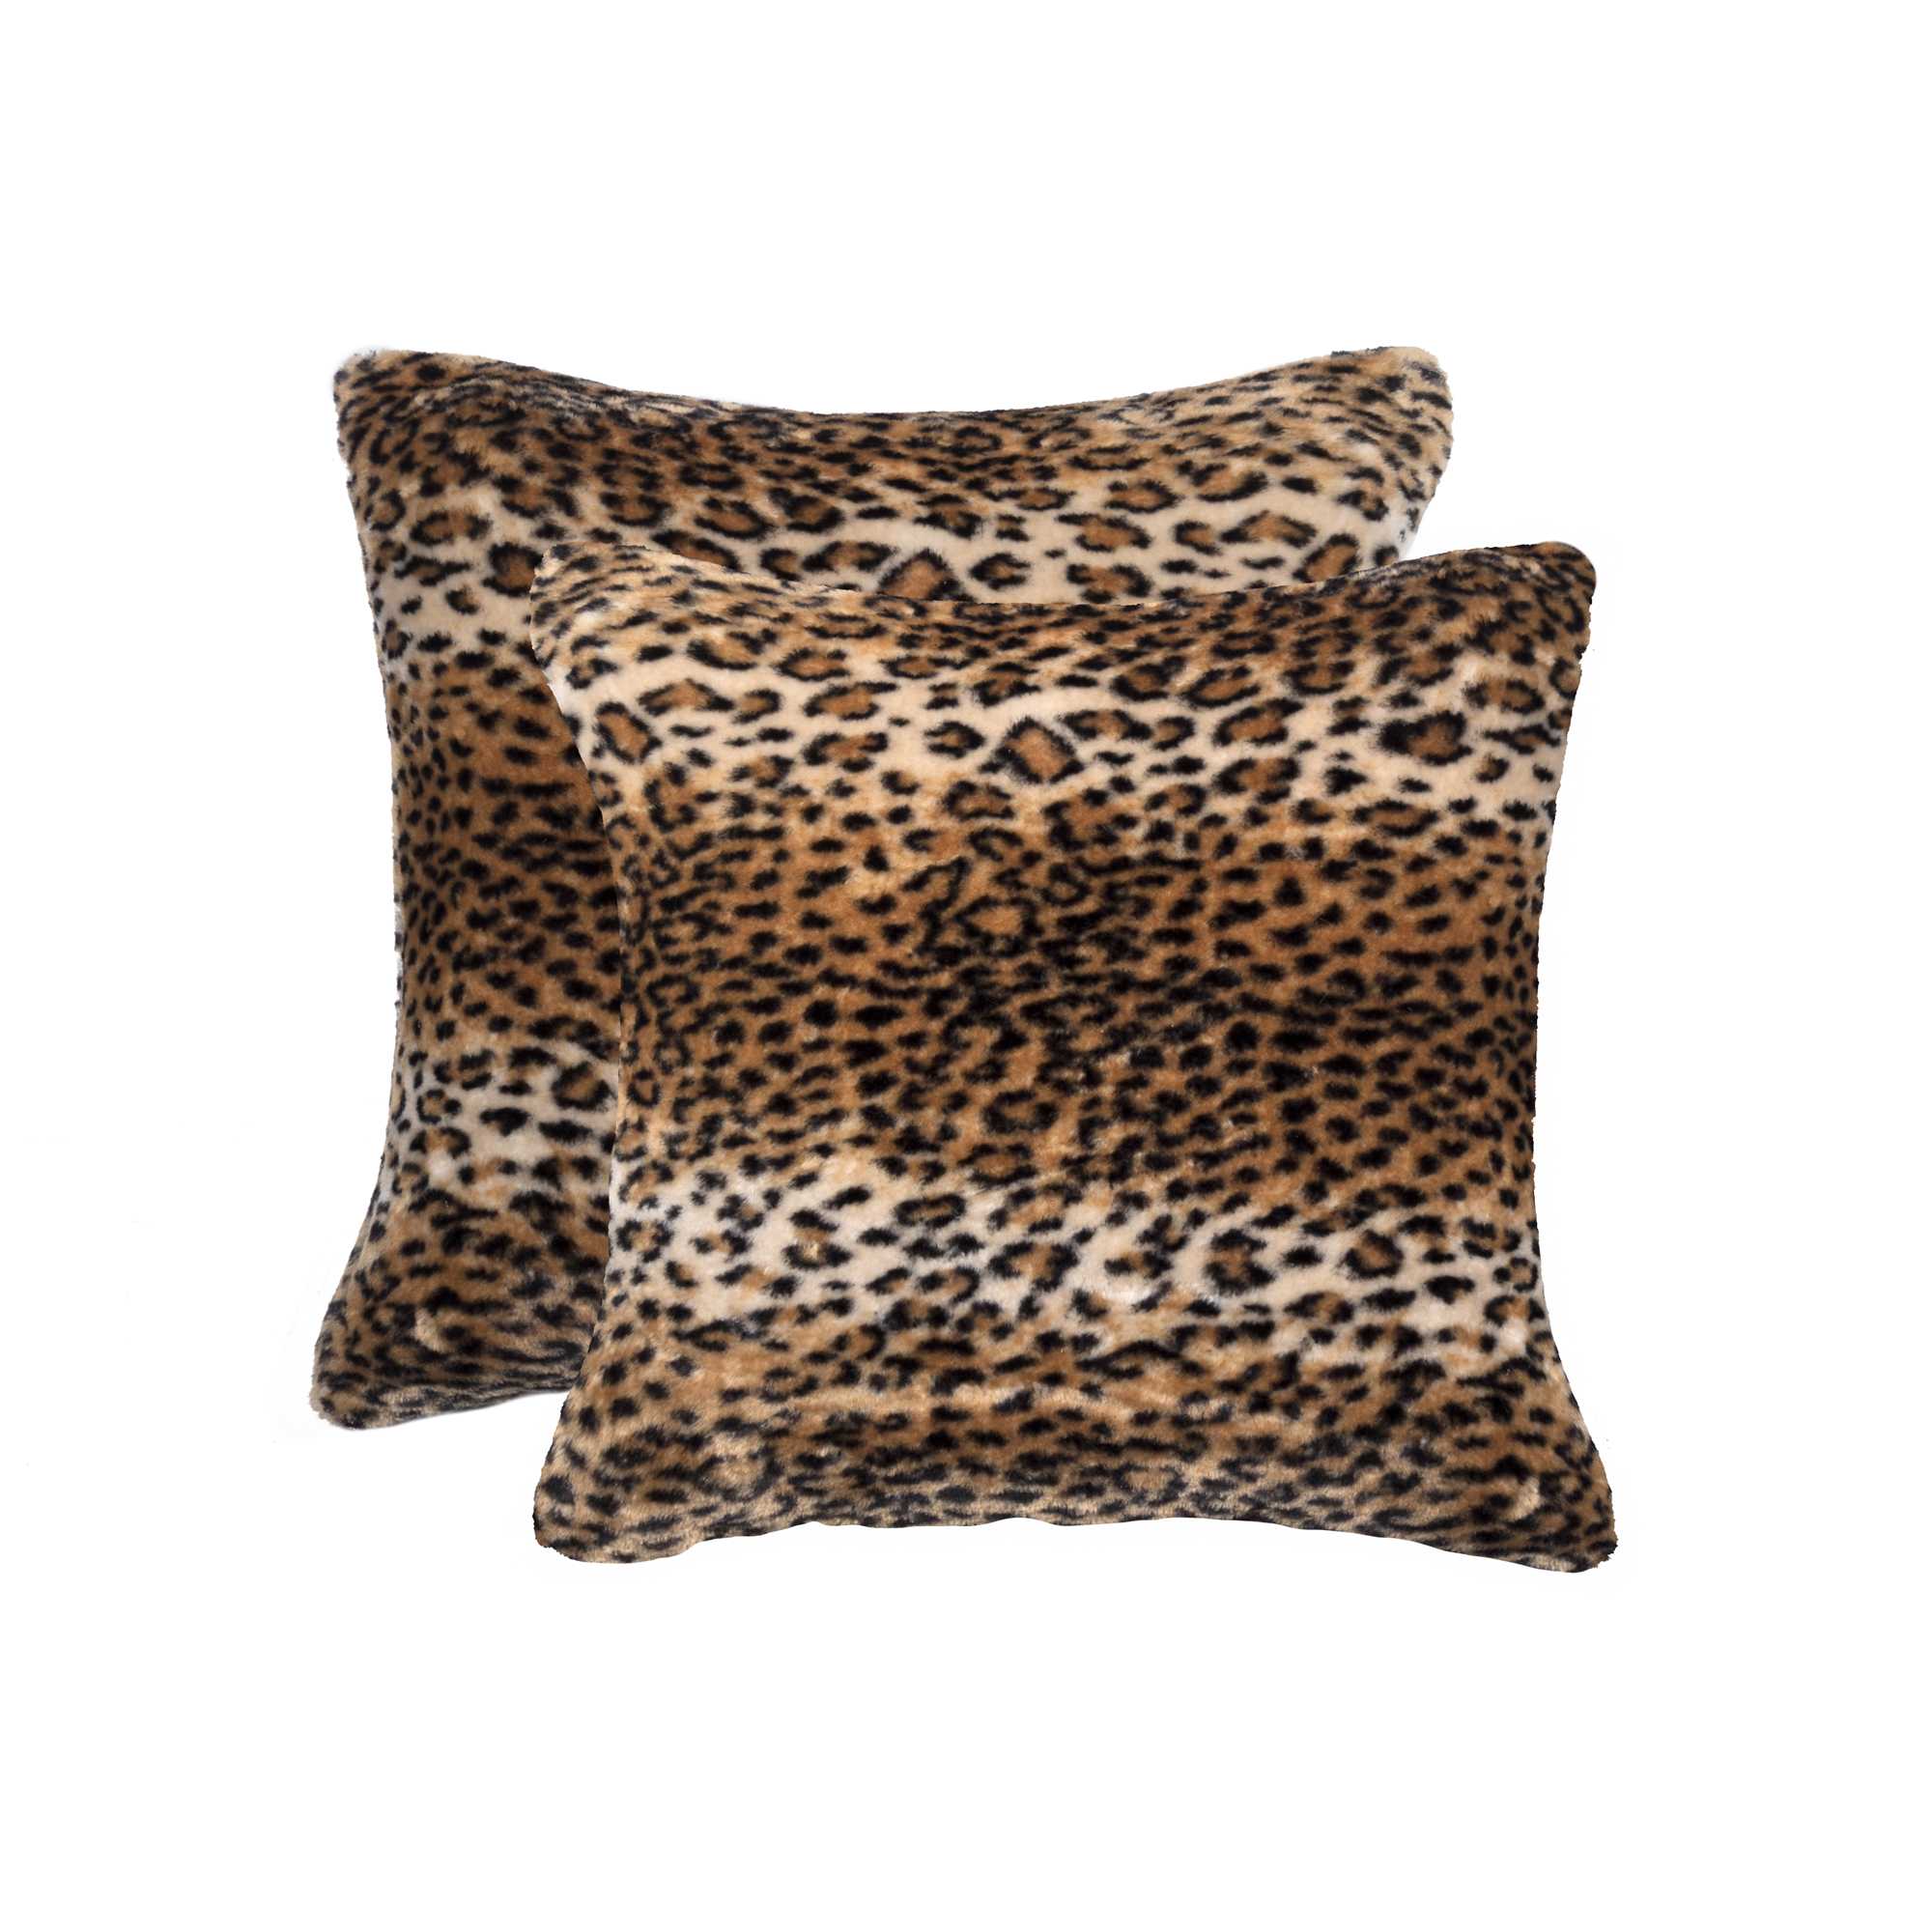 18" x 18" x 5" Leopard Faux - Pillow 2-Pack